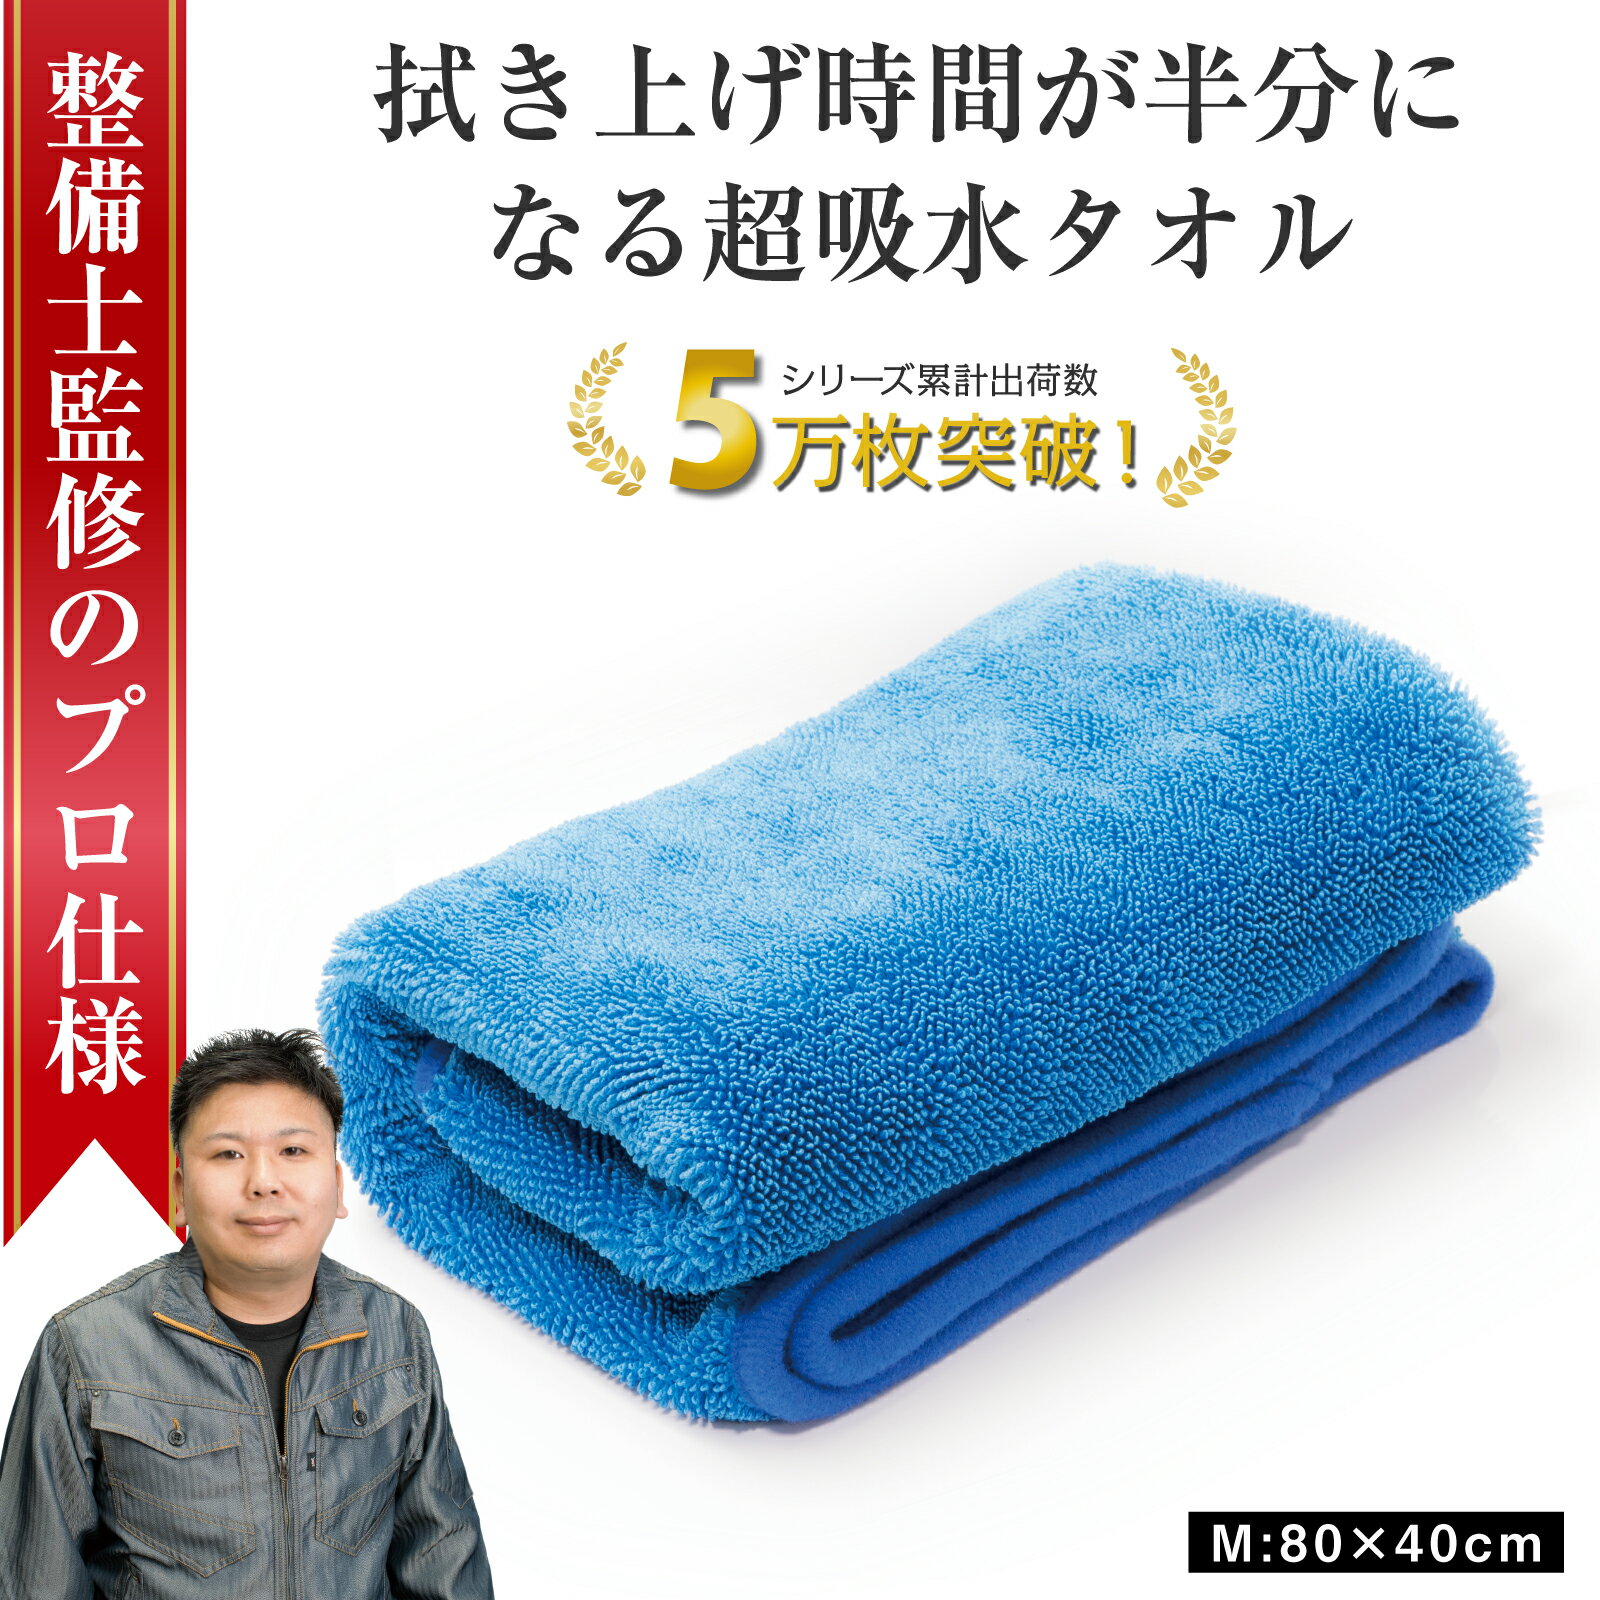 拭き上げしやすい吸水タオル！最強の洗車タオルのおすすめを教えて！